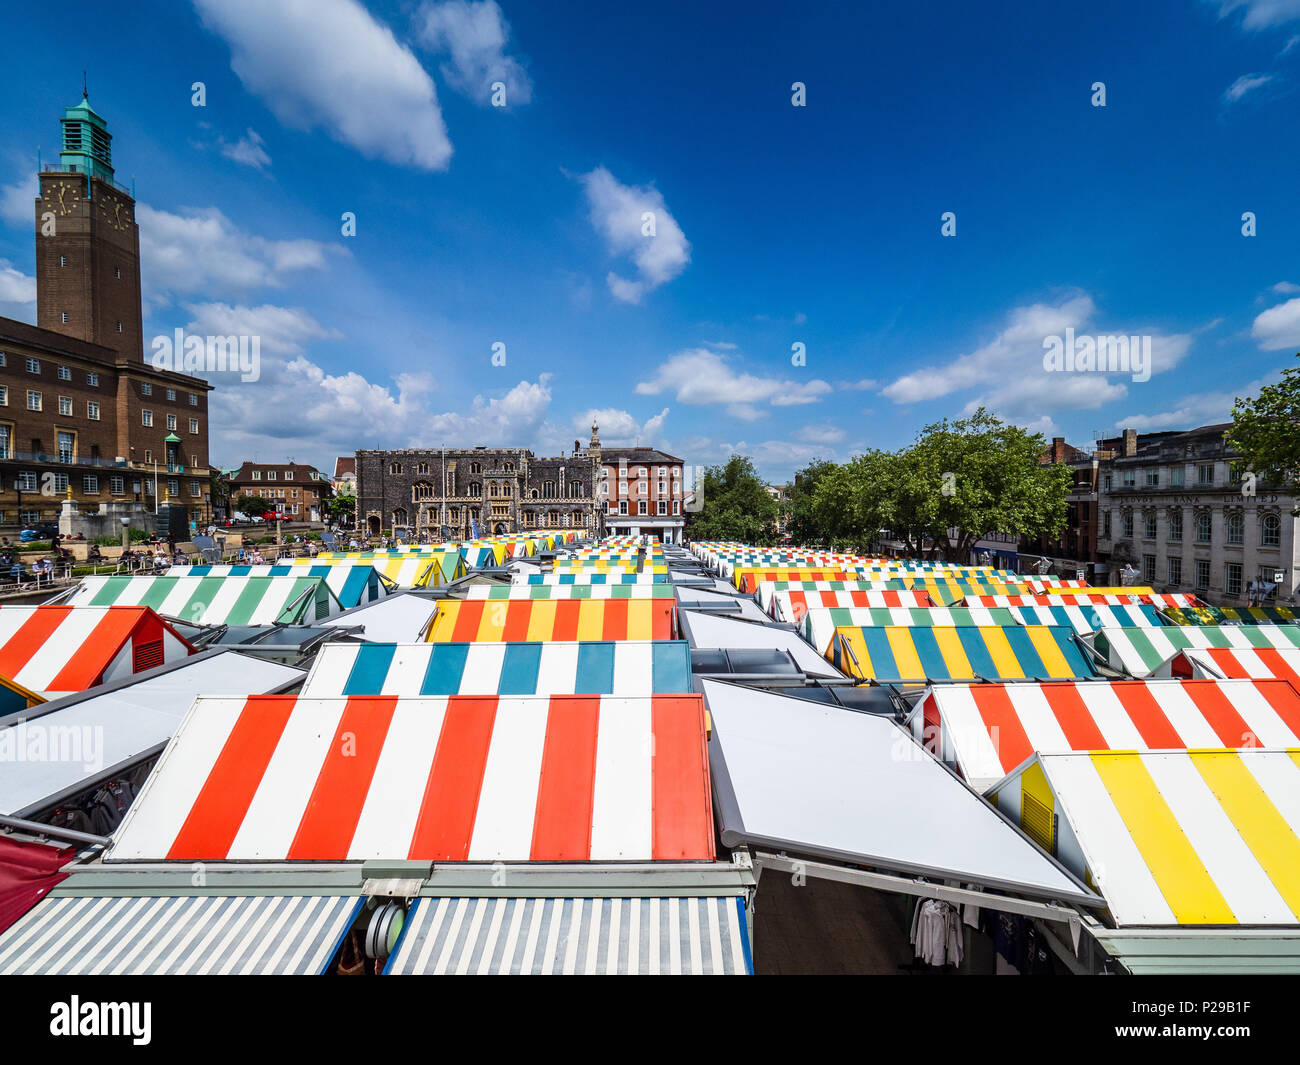 Norwich Market Square, il centro città di Norwich. Fondata alla fine del XI secolo con circa 200 bancarelle è uno dei più grandi mercati all'aperto nel Regno Unito Foto Stock